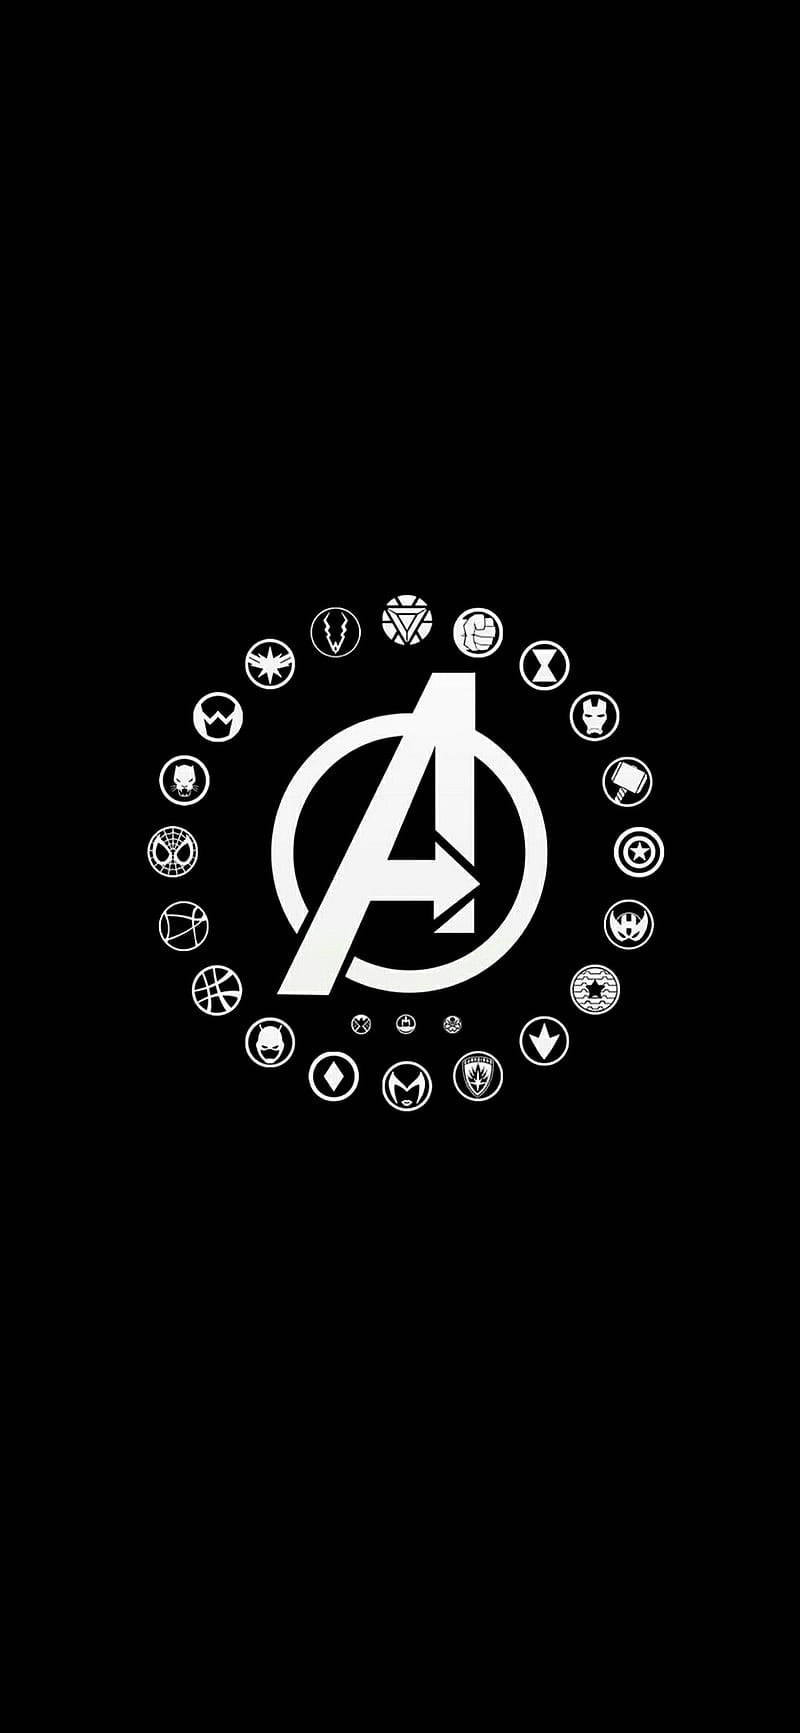 Avenger Hero Logos In Solid Black Wallpaper